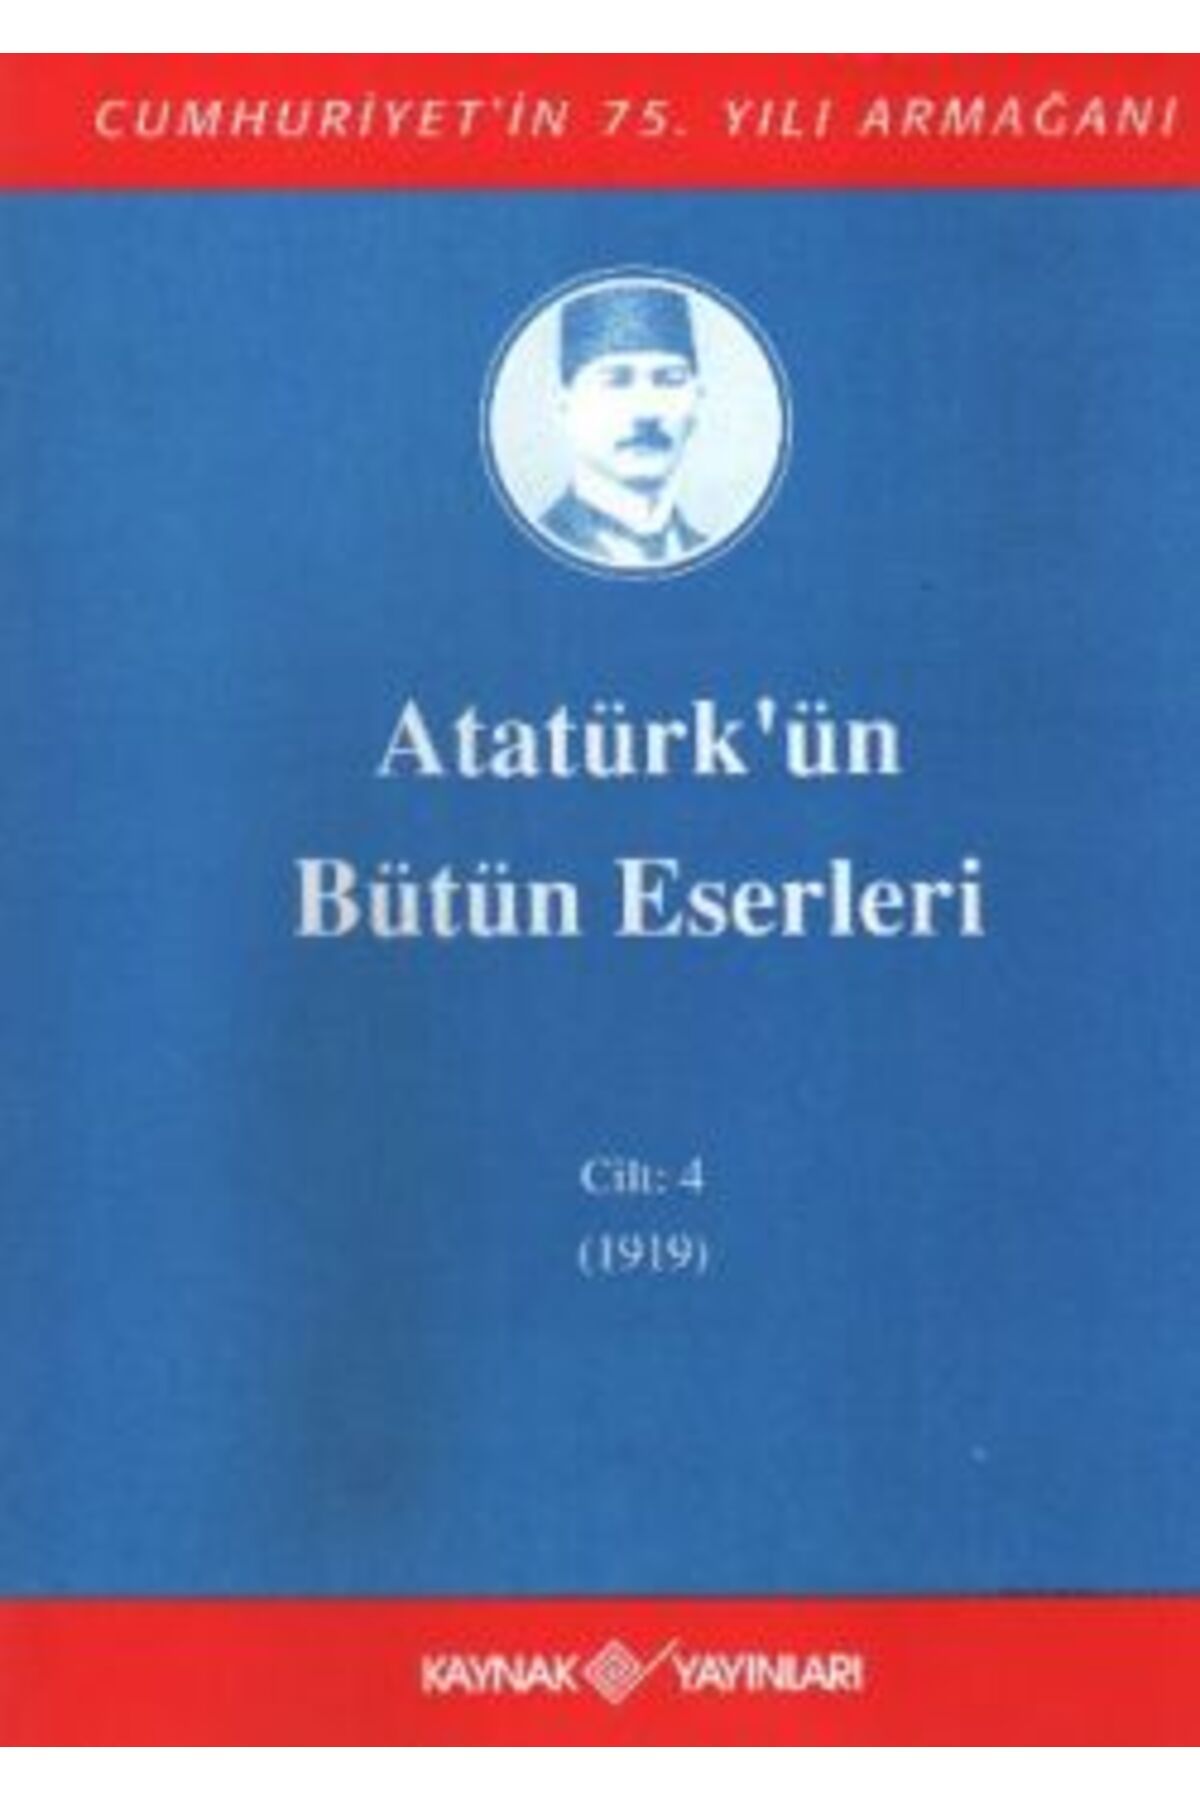 Kaynak Yayınları Atatürk'ün Bütün Eserleri Cilt: 4 (1919)